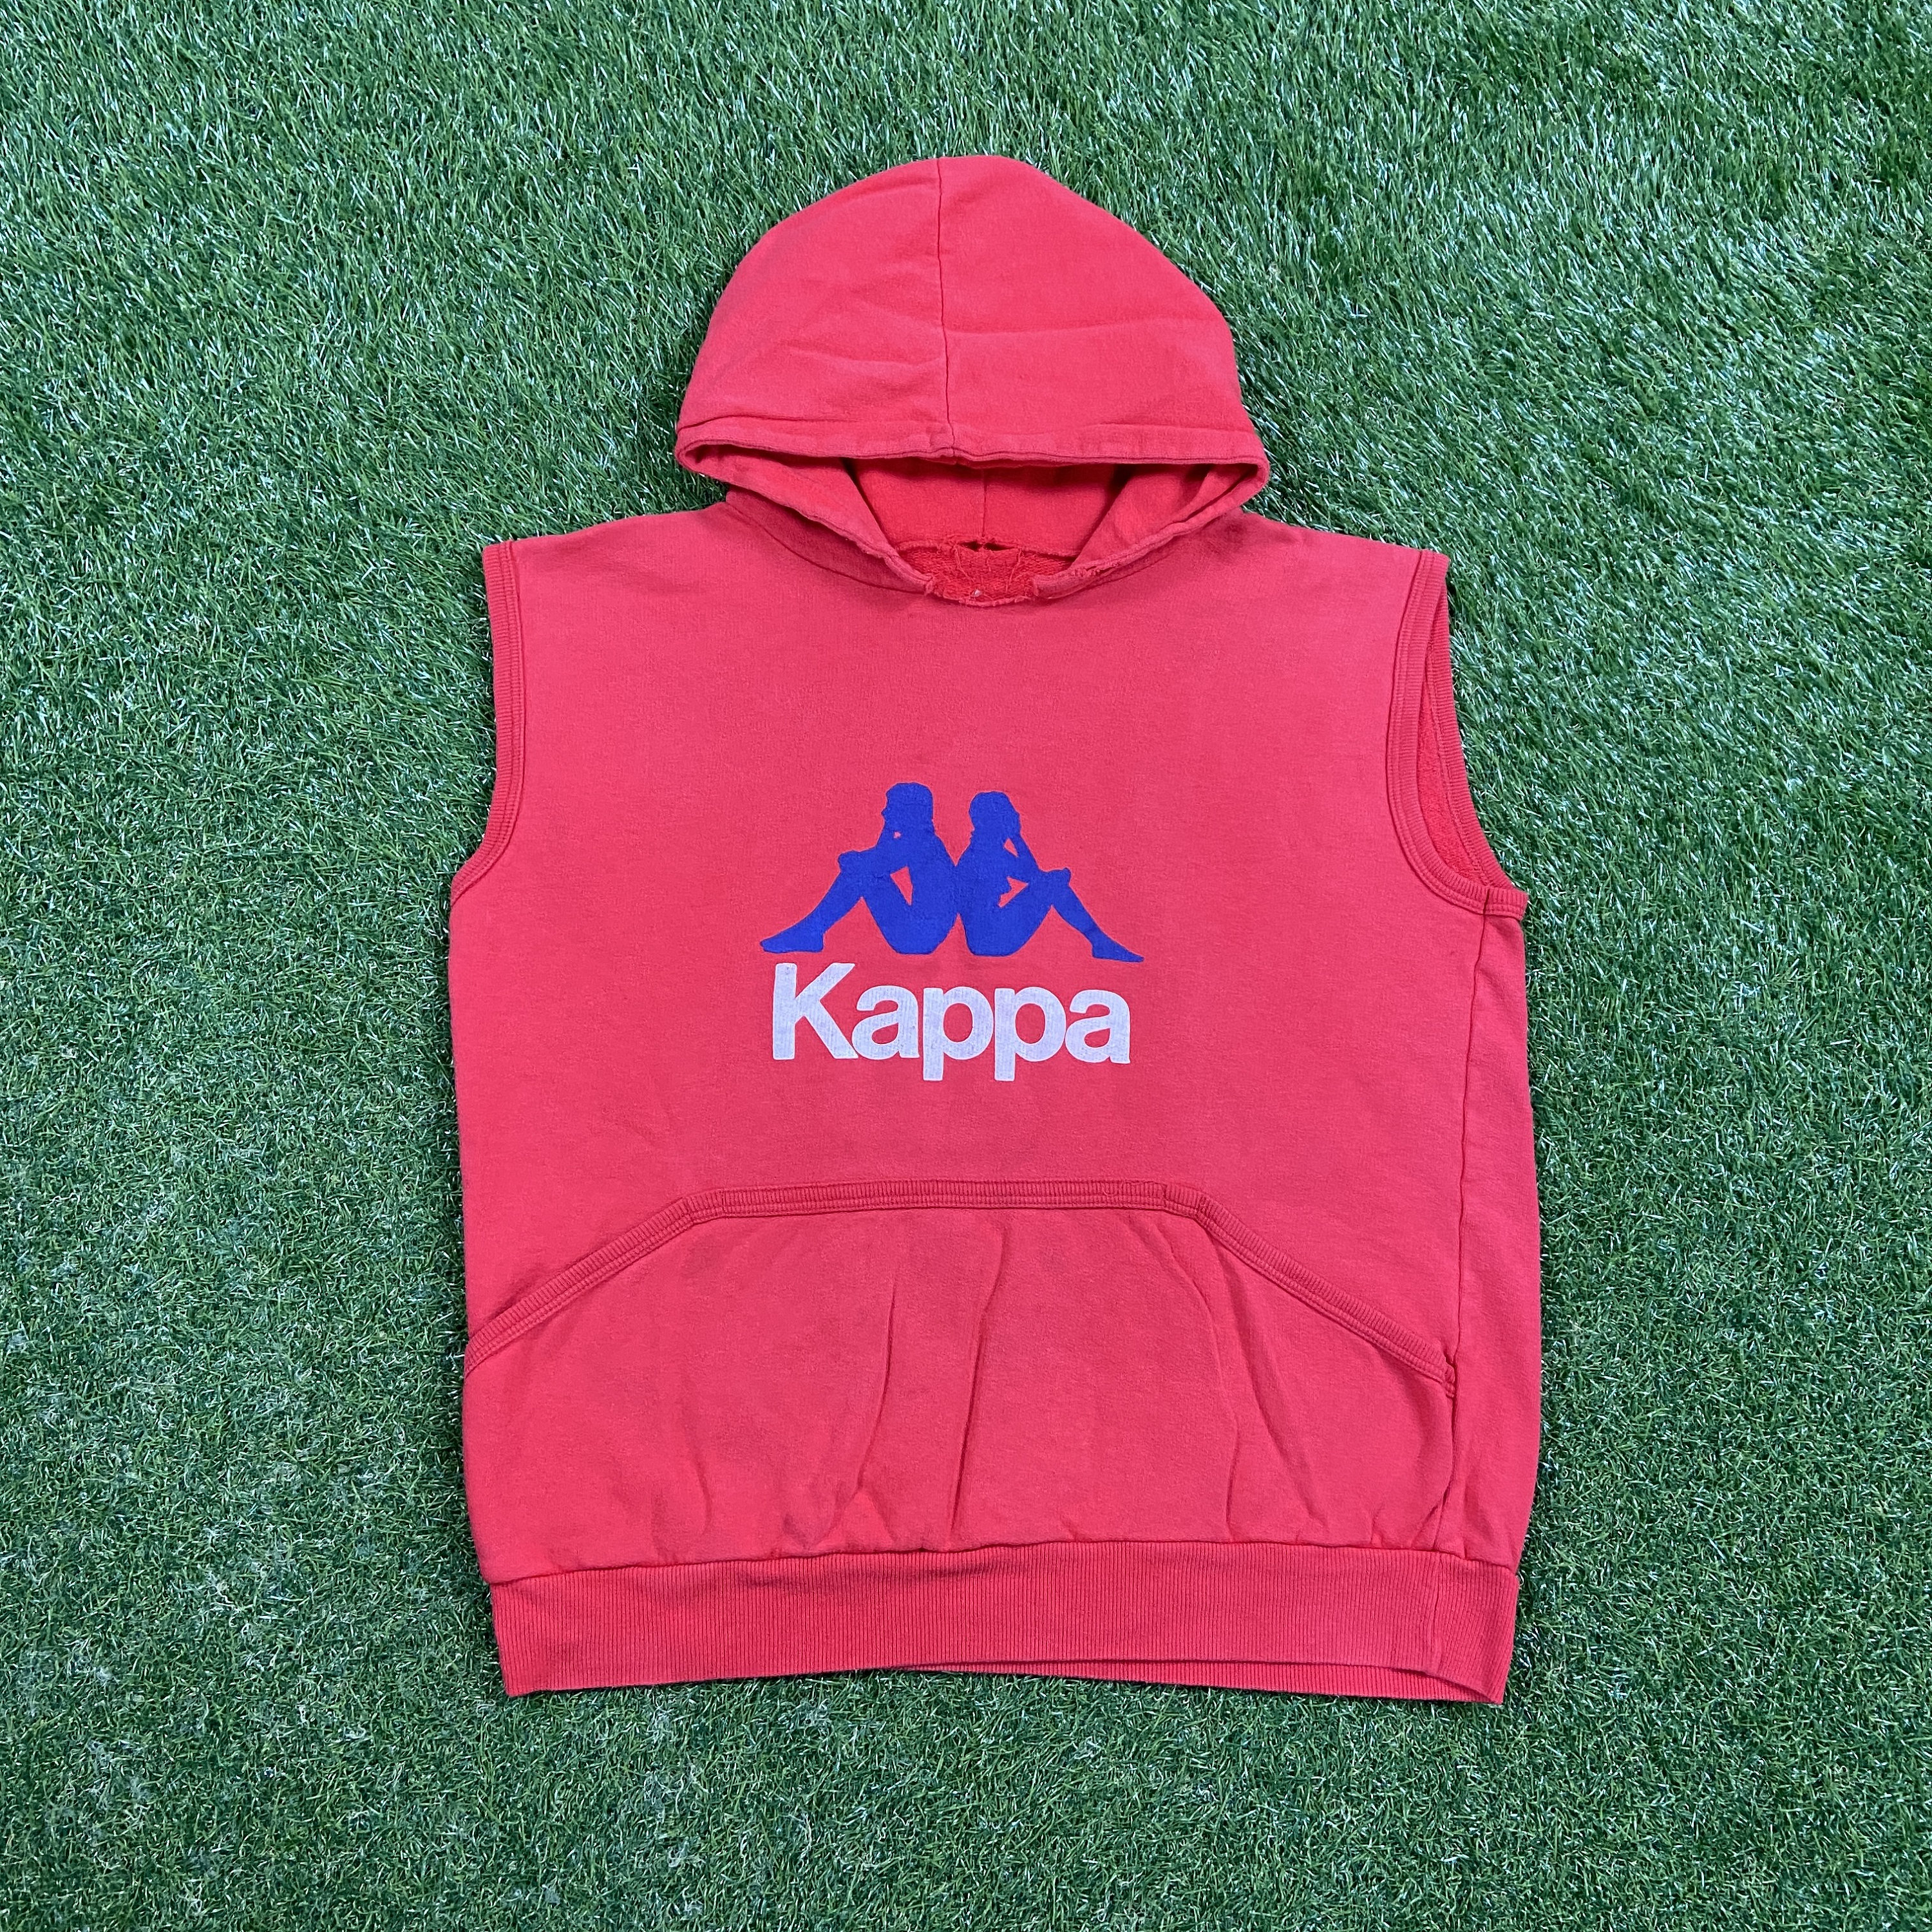 Droop Vanding Orphan Vintage Kappa Sleeveless Hoodie Sweatshirt Size Medium M Italy - Etsy